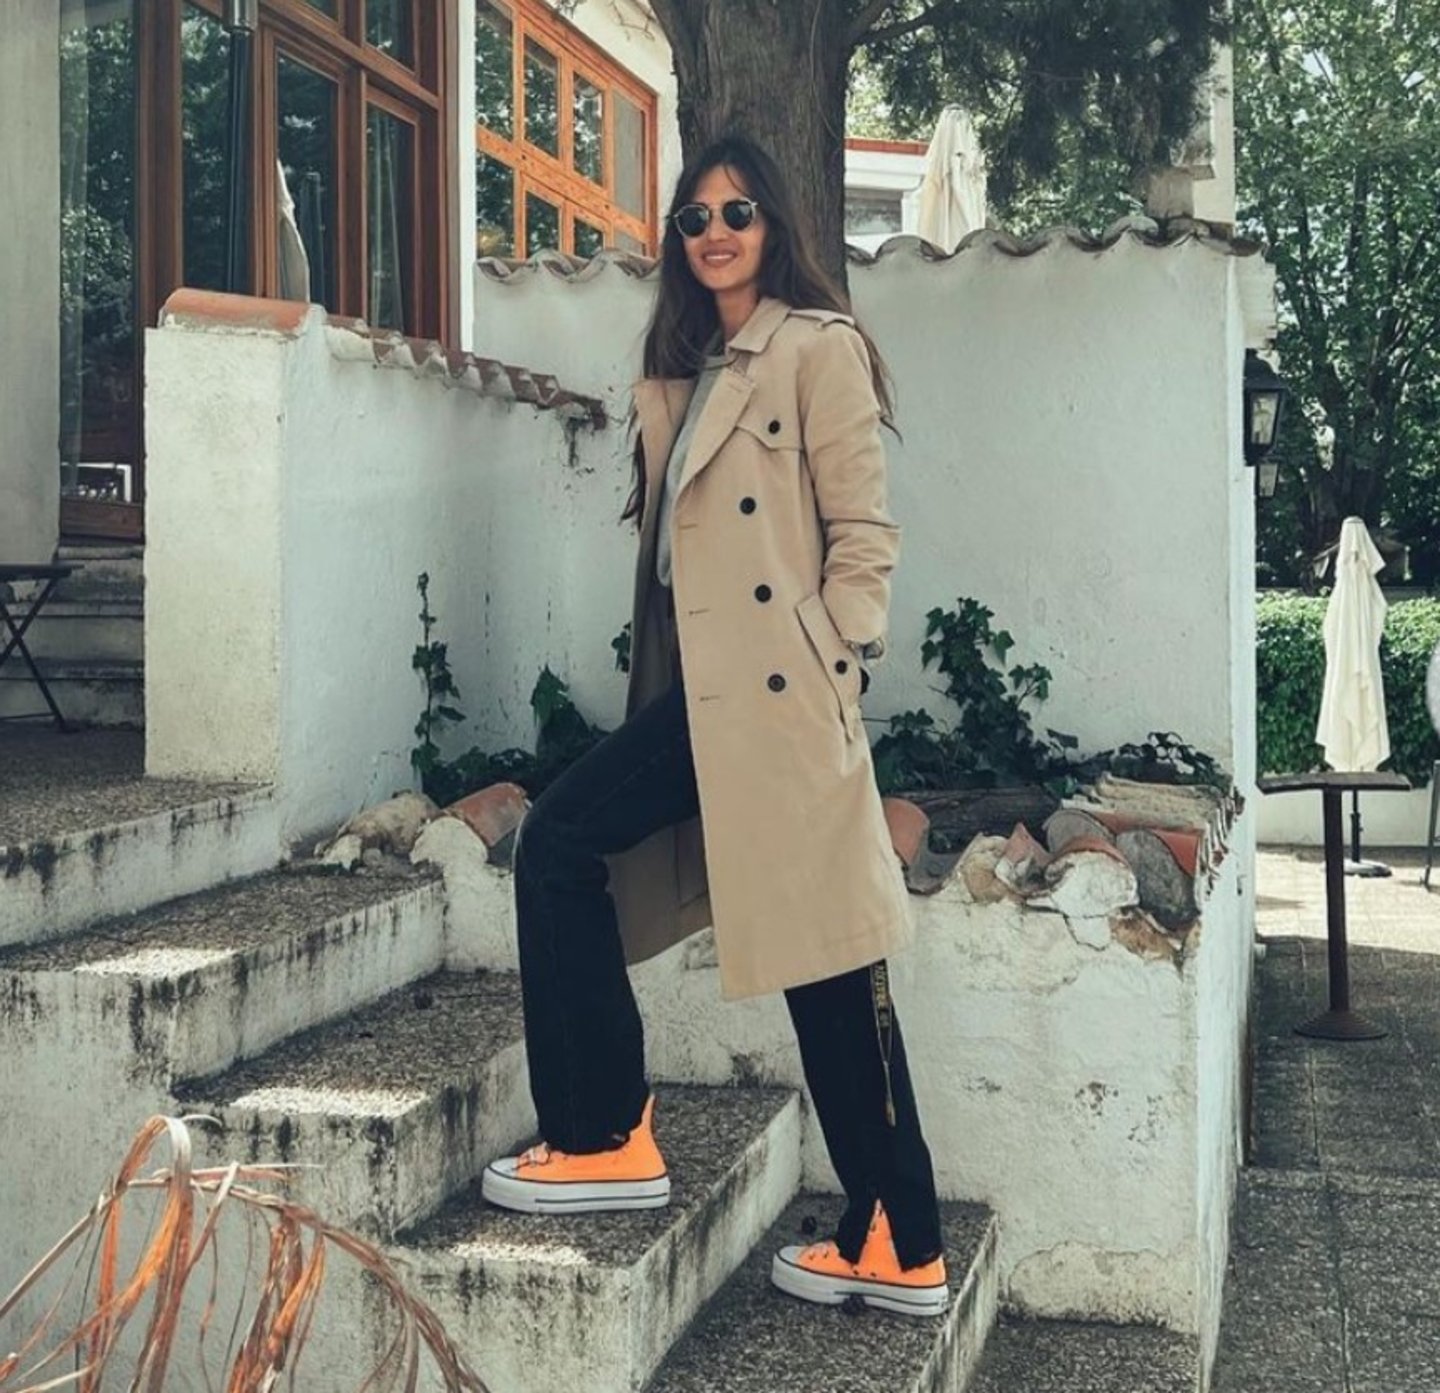 zapatillas en color naranja de Sara Carbonero